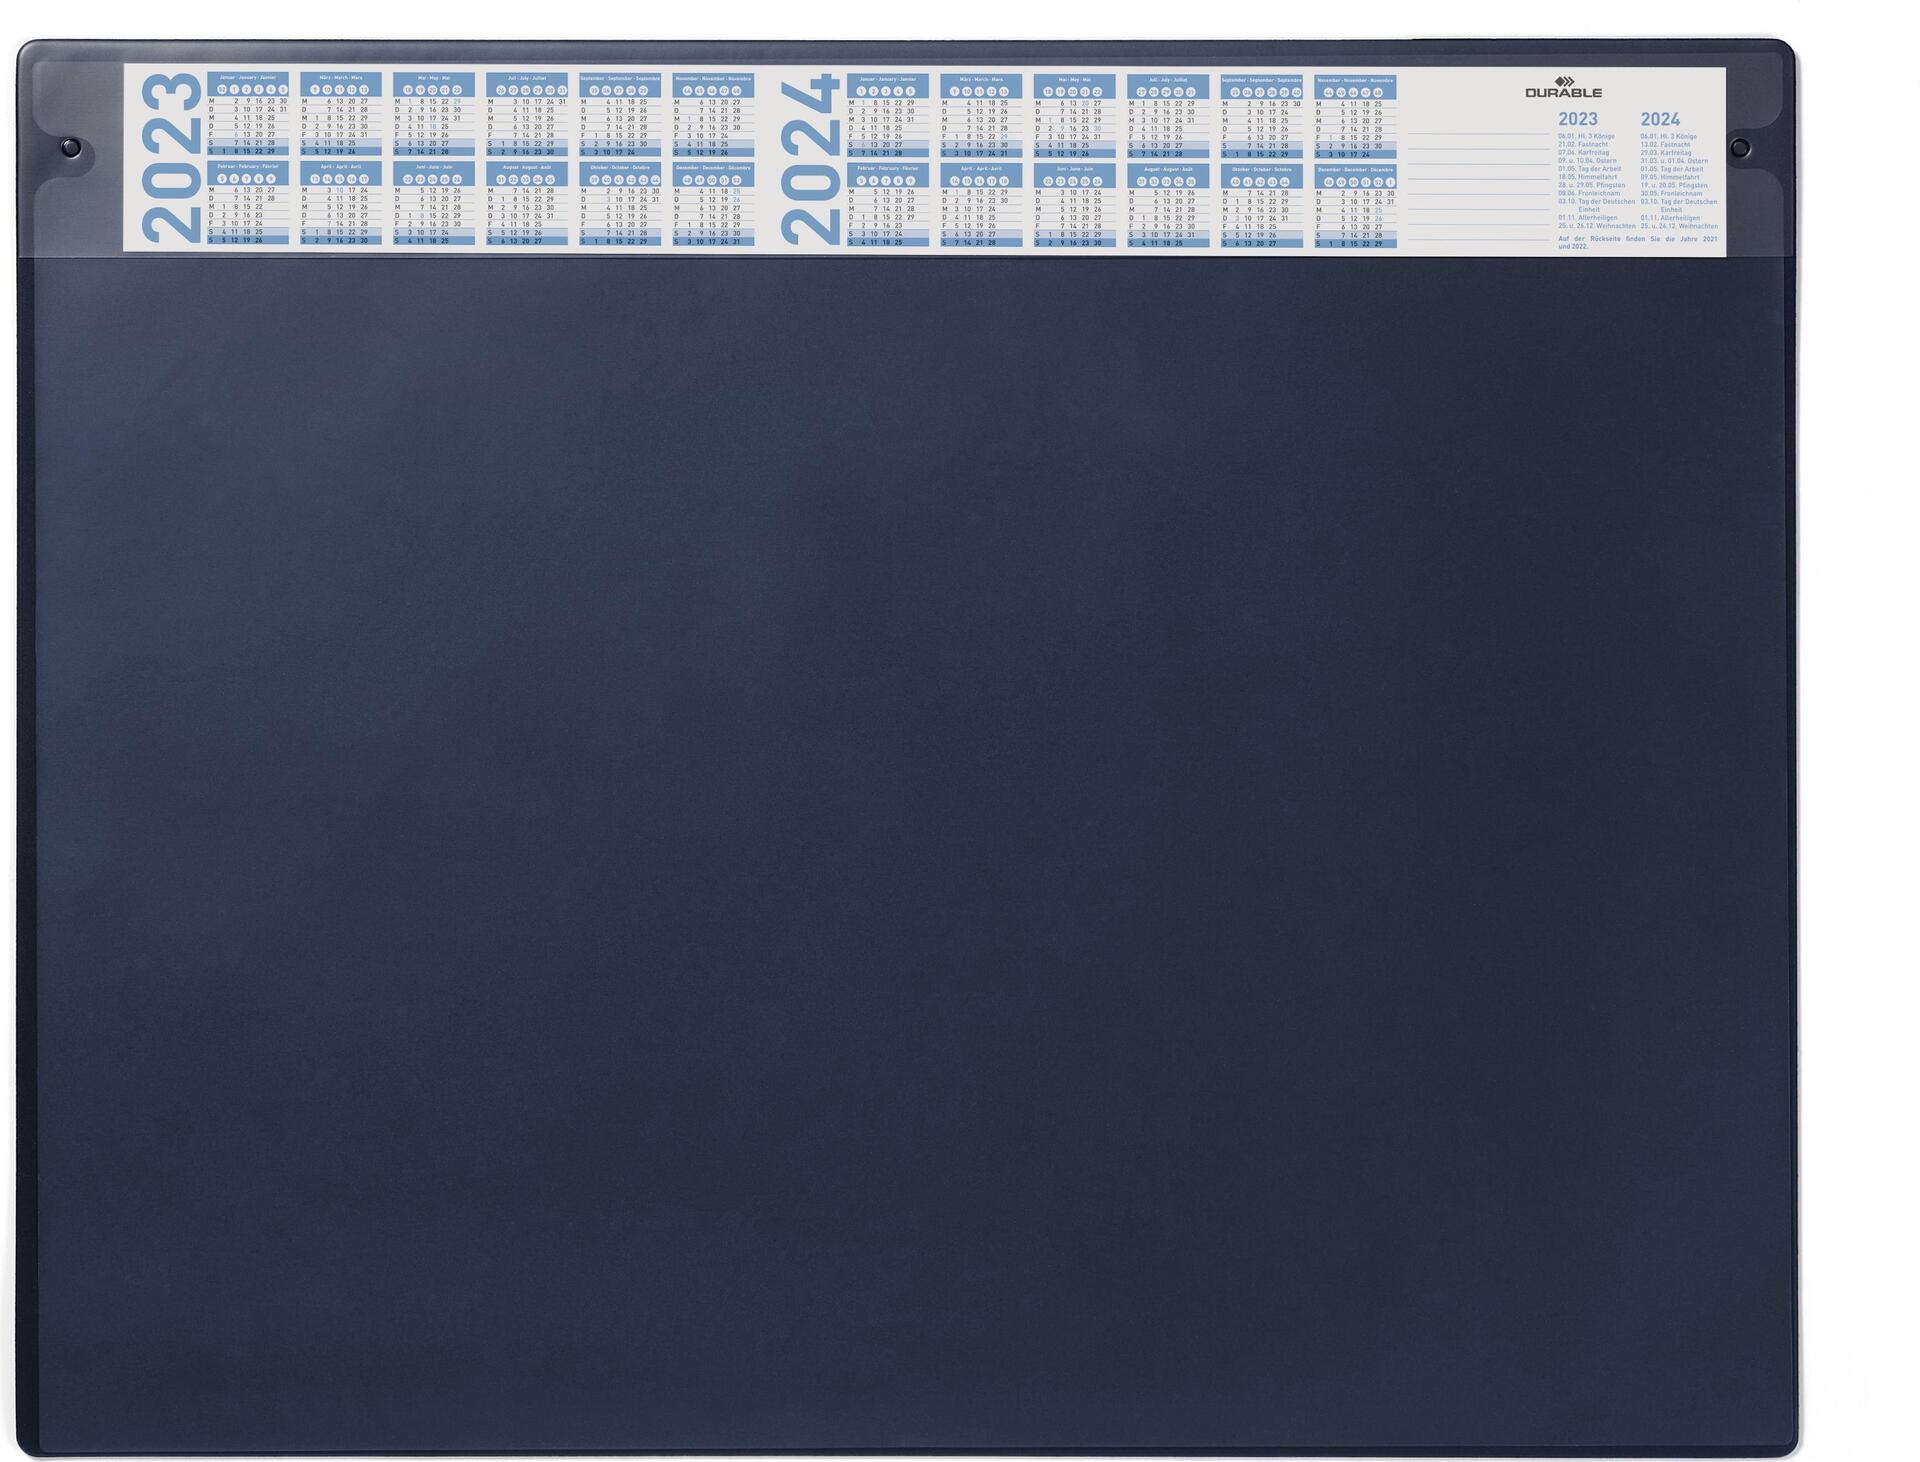 DURABLE Schreibunterlage 650x520 mm m. Jahreskalender + austauschbarer Abdeckung 5 ST 720507